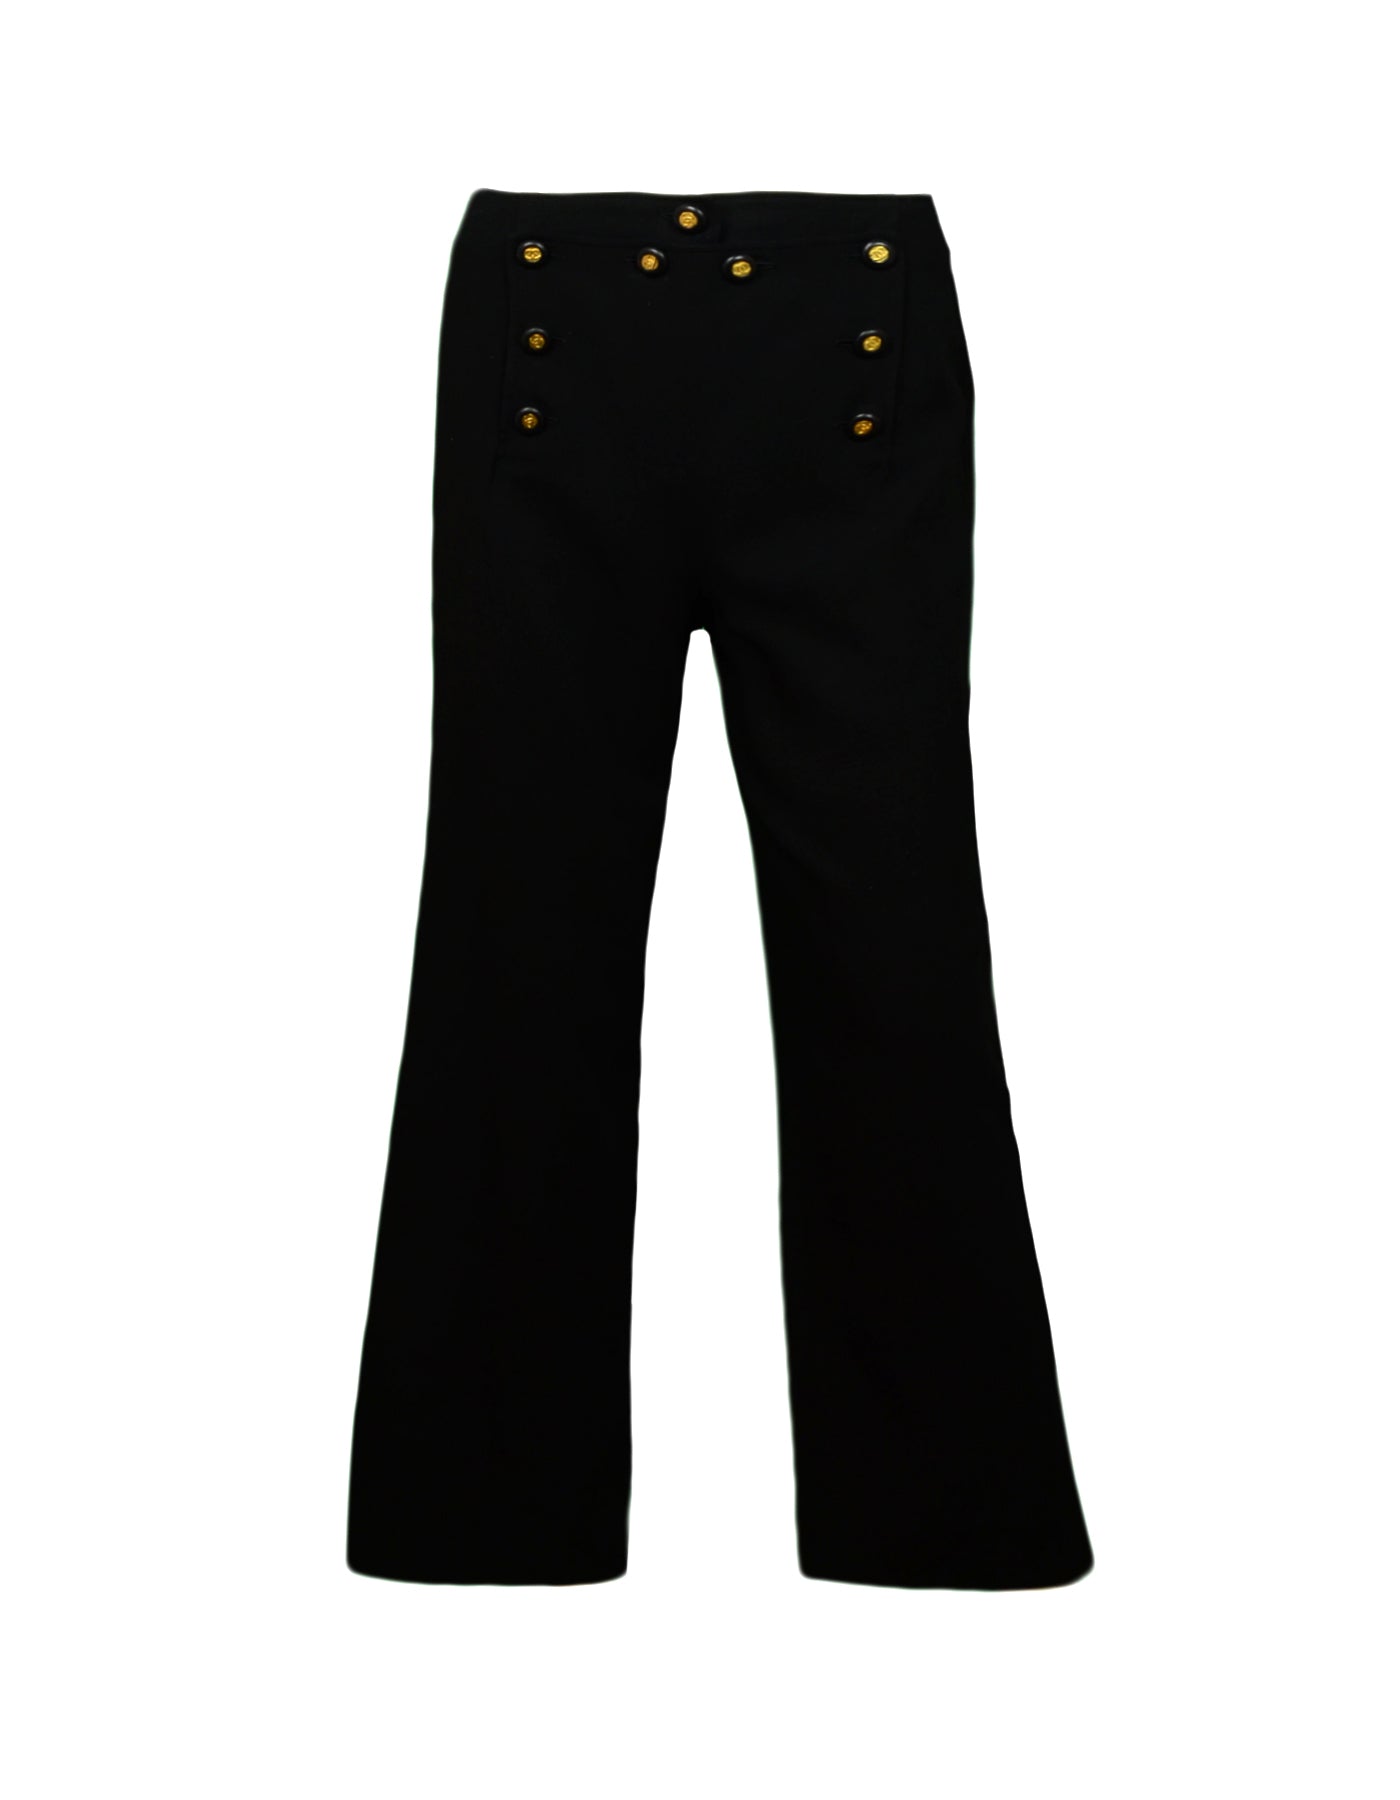 Chanel Vintage Black Wool Sailor Pants w/ 9 CC Buttons sz 34